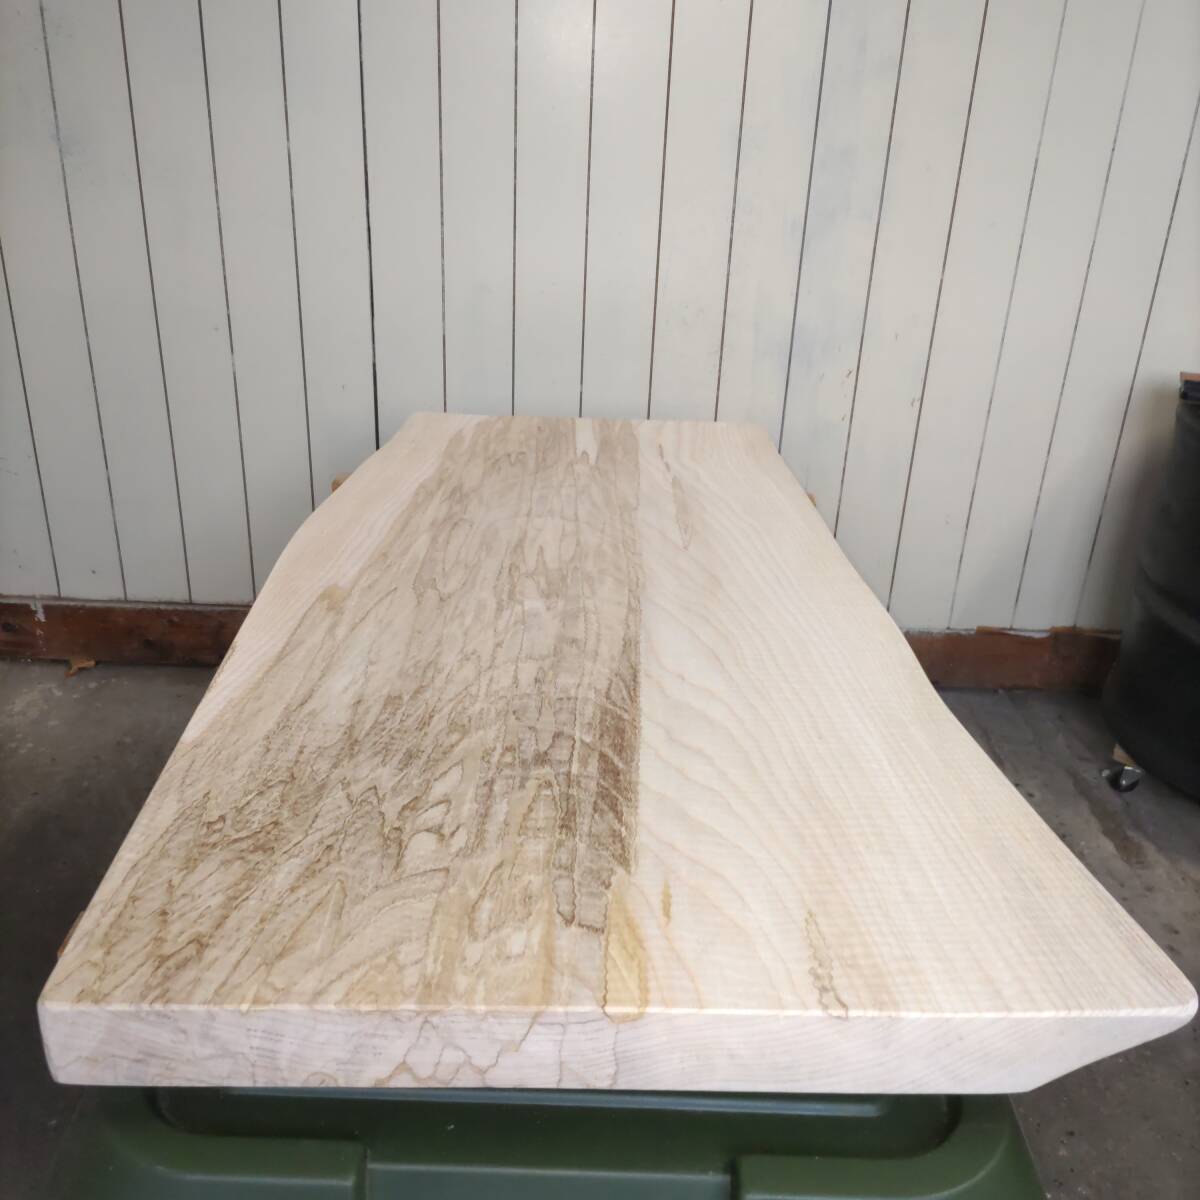 イタヤカエデ 楓 約長900幅380〜500厚45ミリ 製材後約半年 耳付き板 一枚板 天然木 無垢 未乾燥 花台 多肉棚 テーブル板の画像4